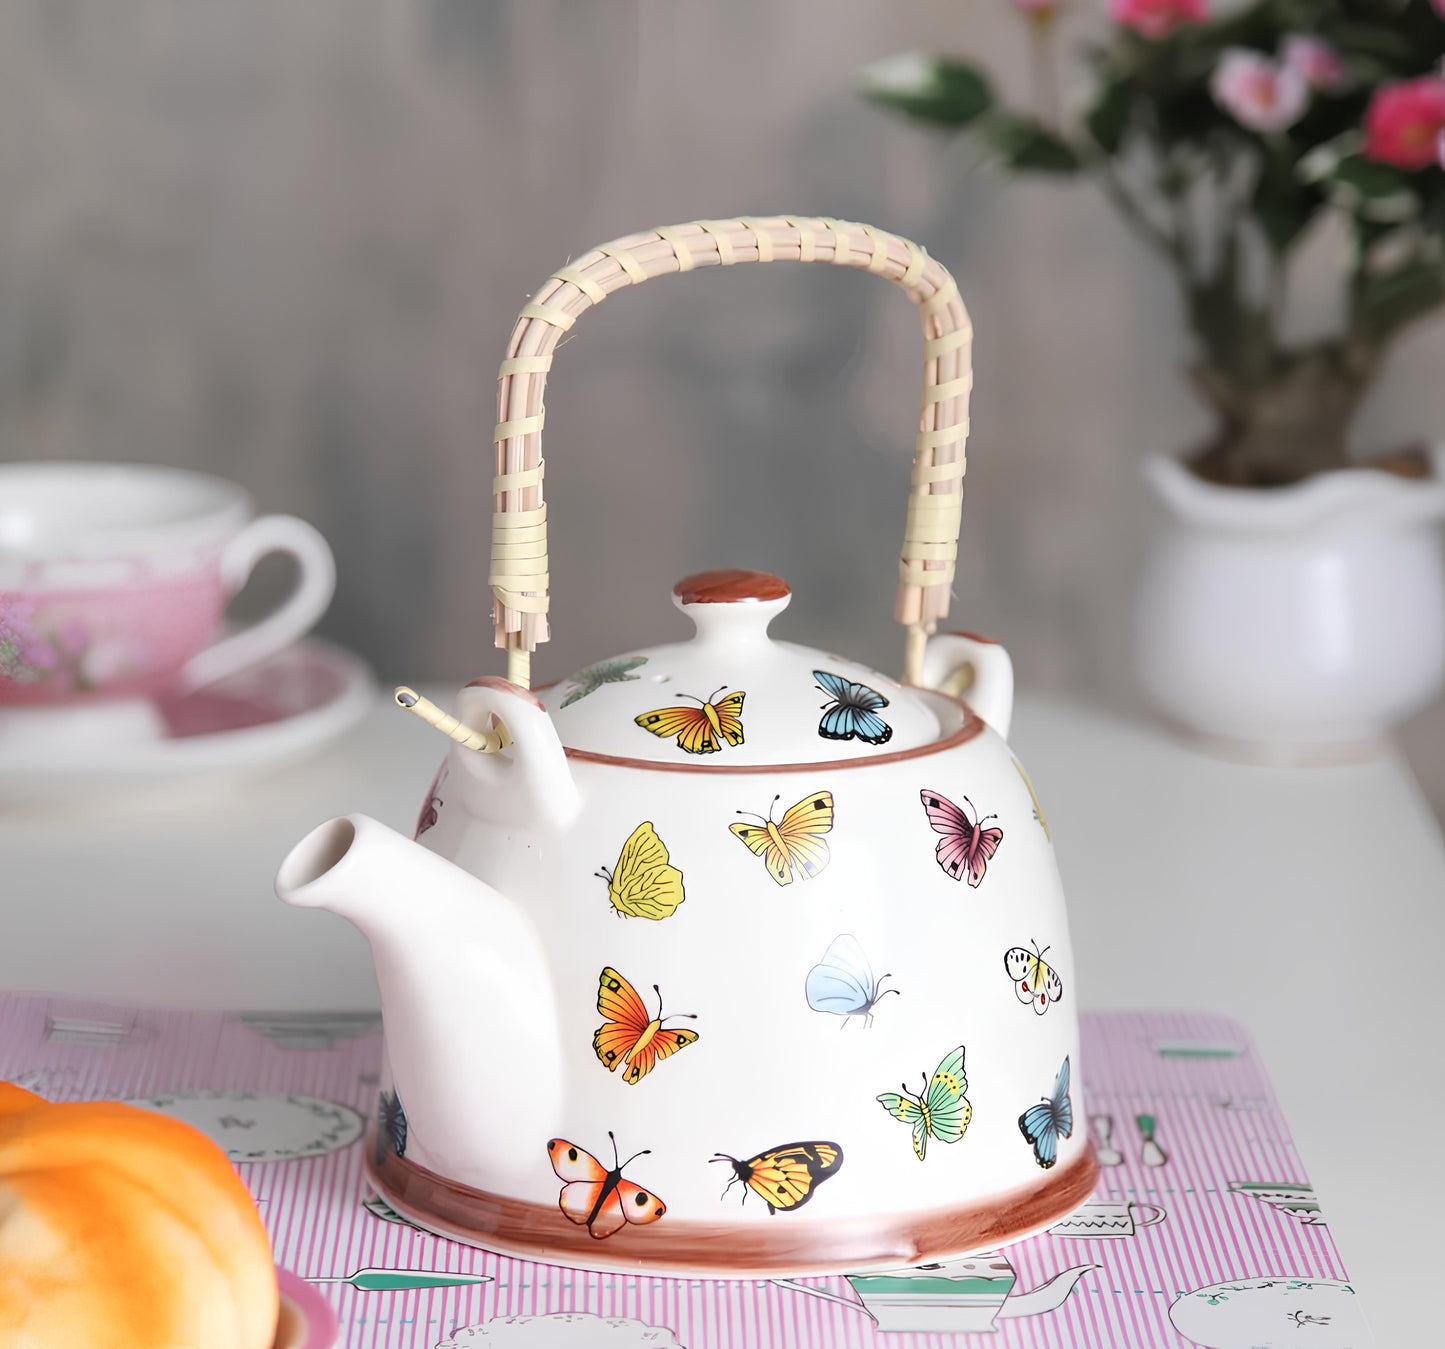 Ceramic Printed Teapot